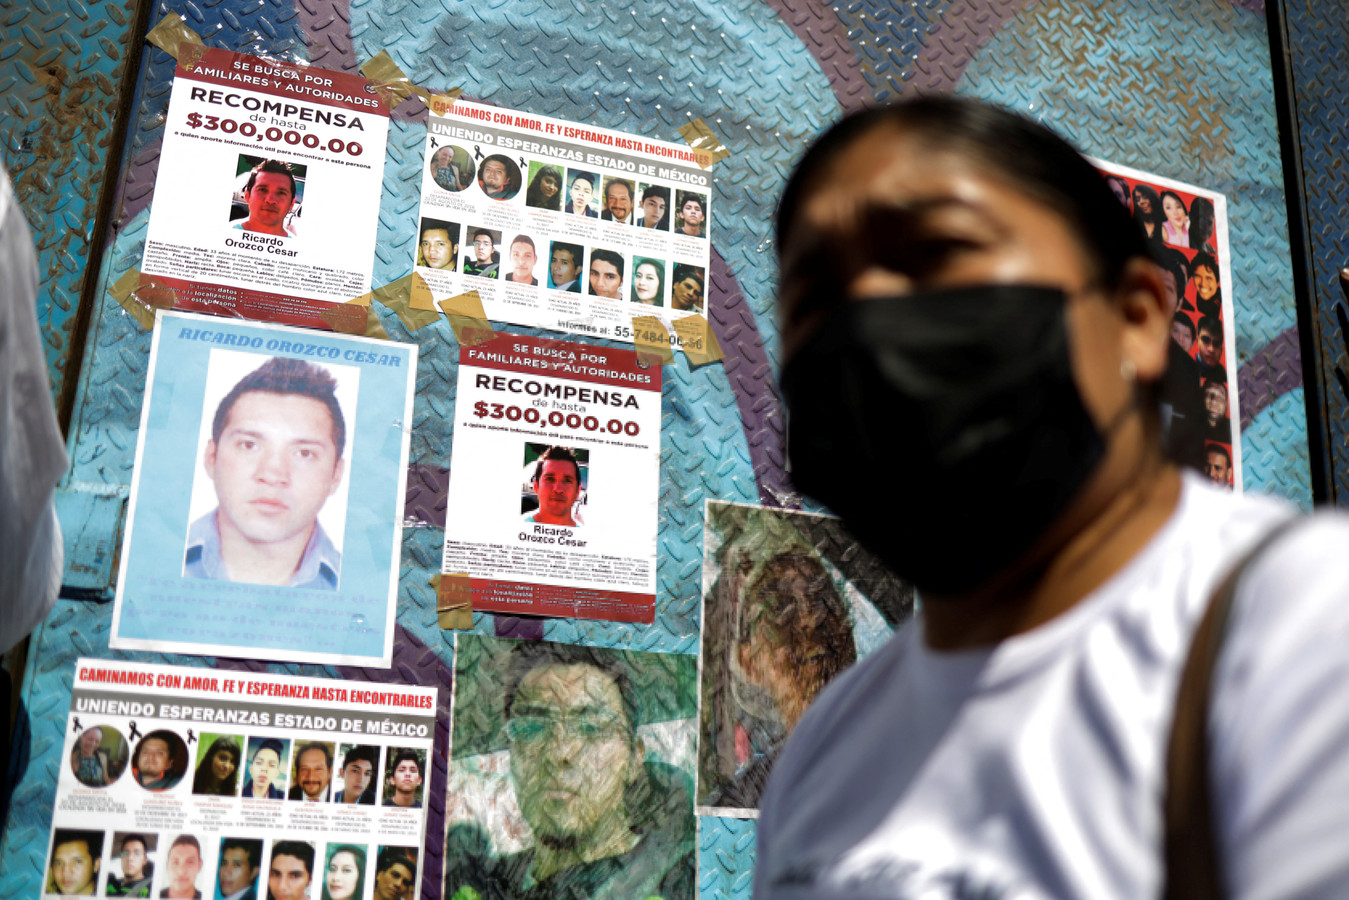 Foto's van vermiste personen in Mexico.